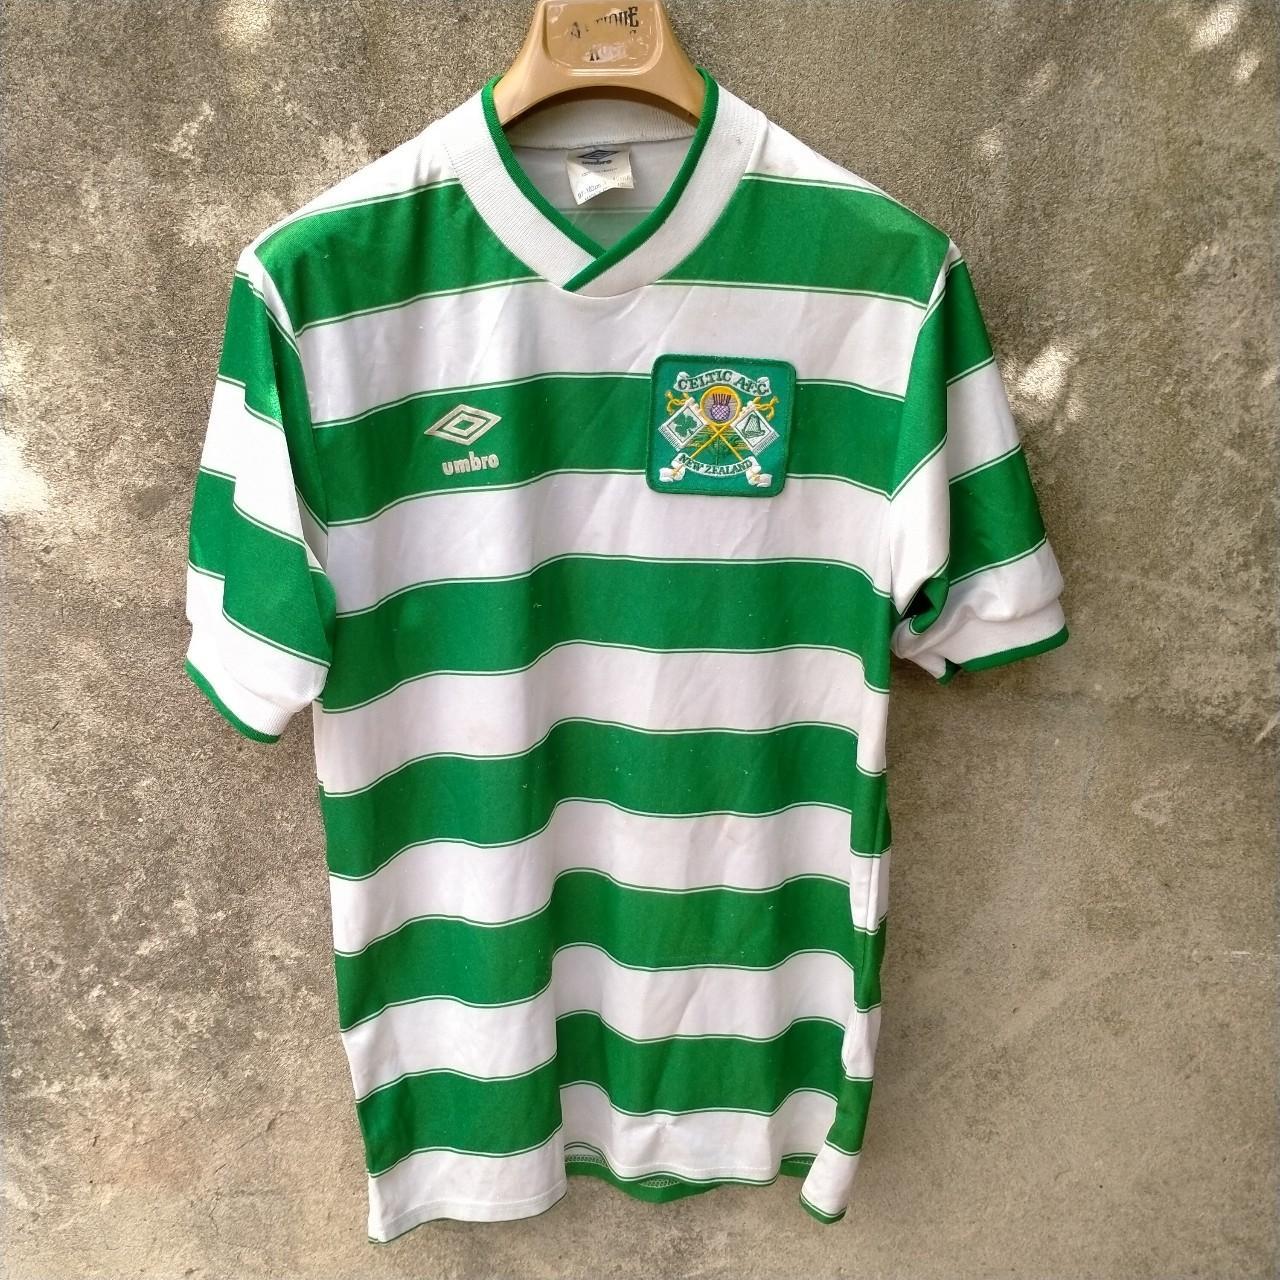 Rare Celtic 1985-87 home football shirt / jersey,... - Depop